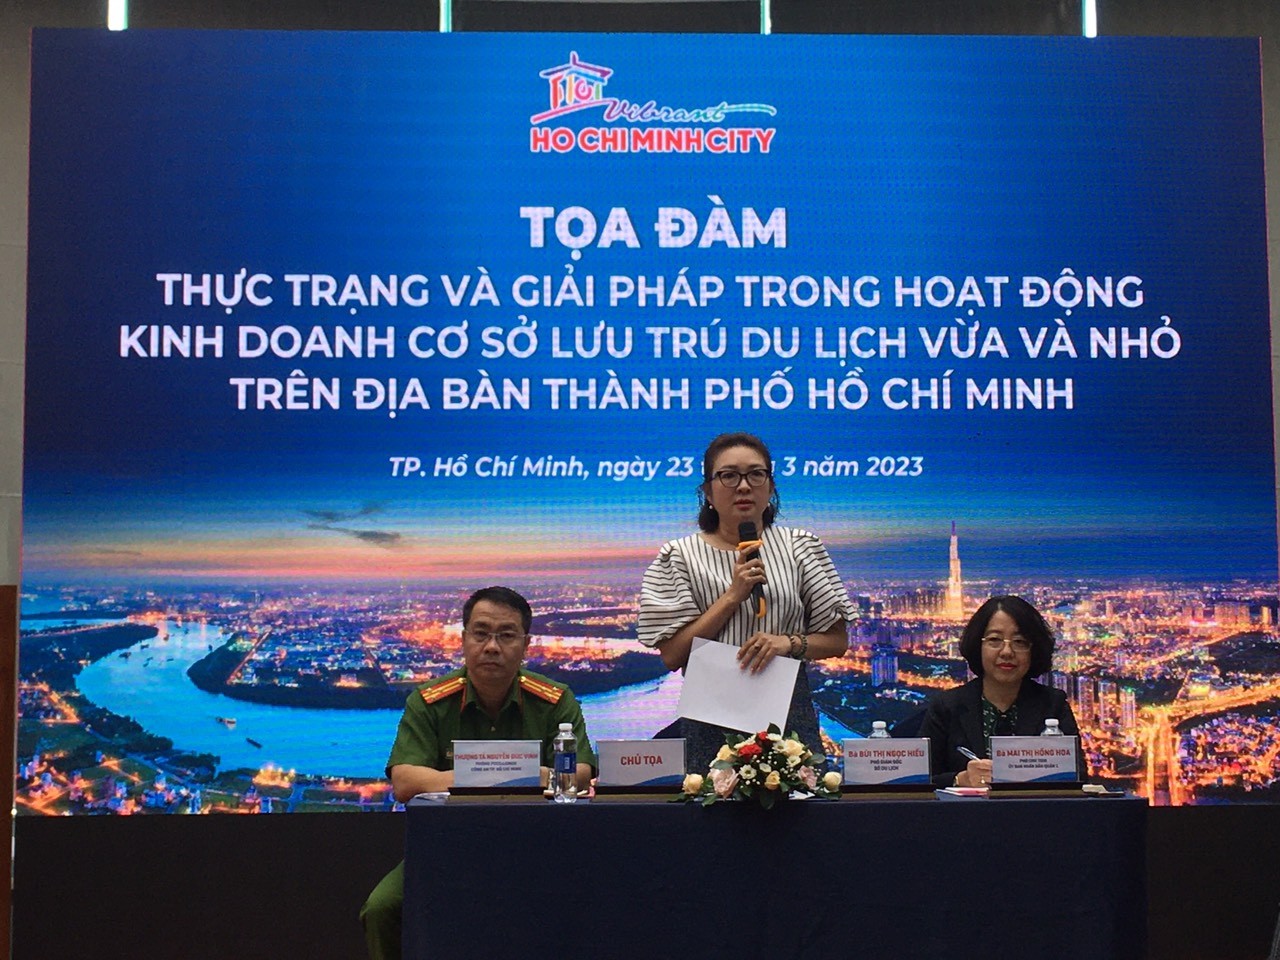 Cần tạo thuận lợi cho các cơ sở lưu trú du lịch vừa và nhỏ tại TP. Hồ Chí Minh